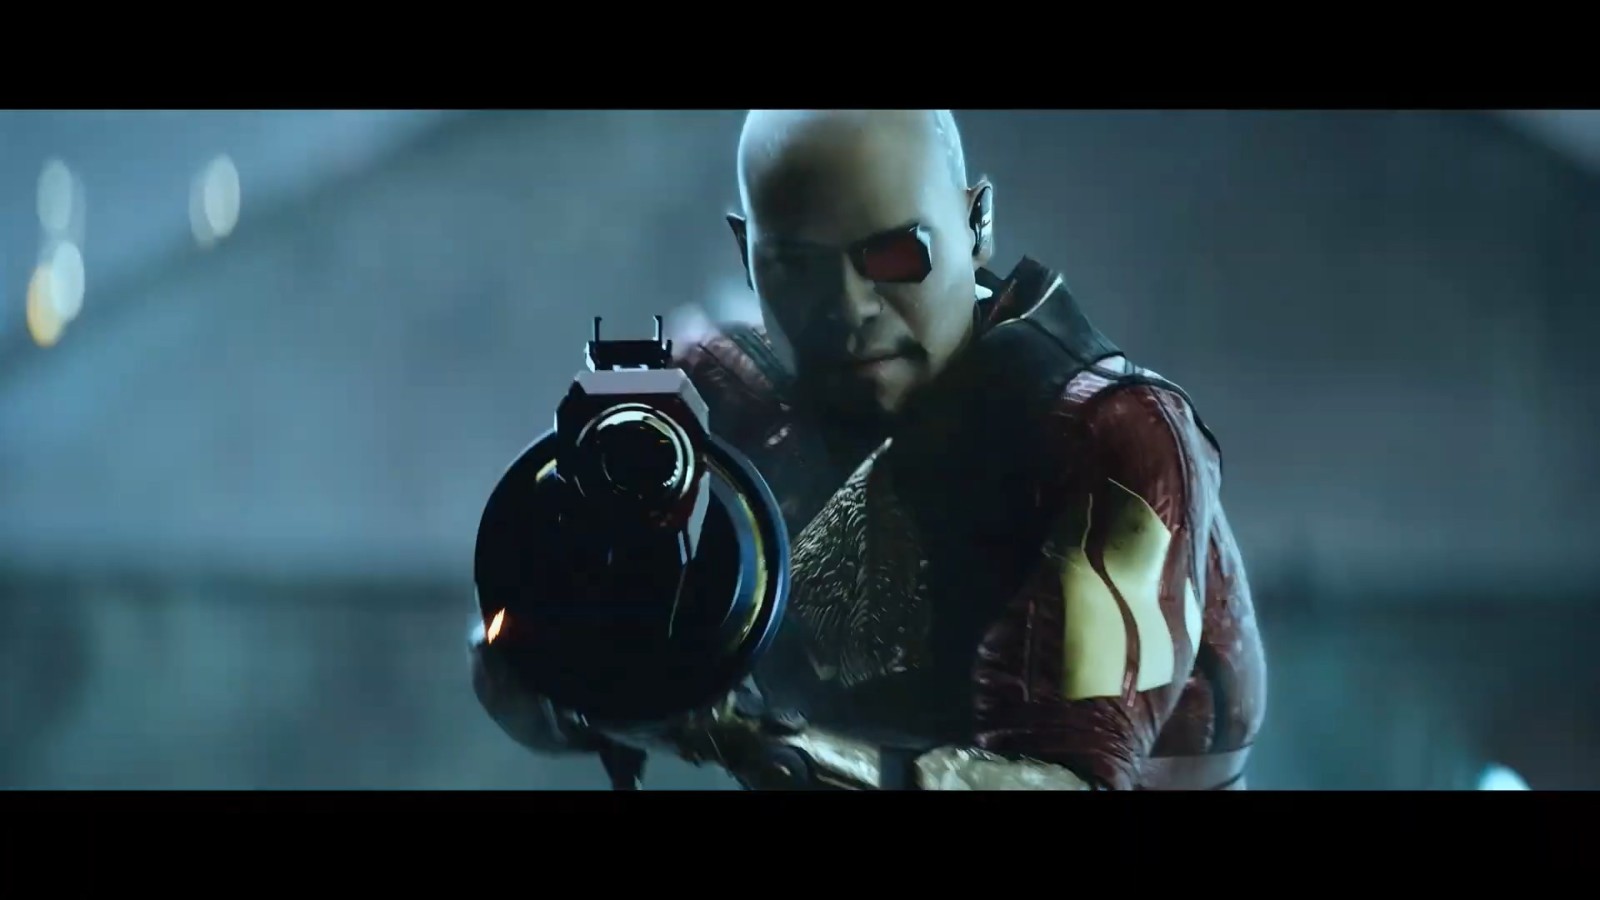 育碧《超猎都市》全新CG宣传片发布 解锁独家近战武器